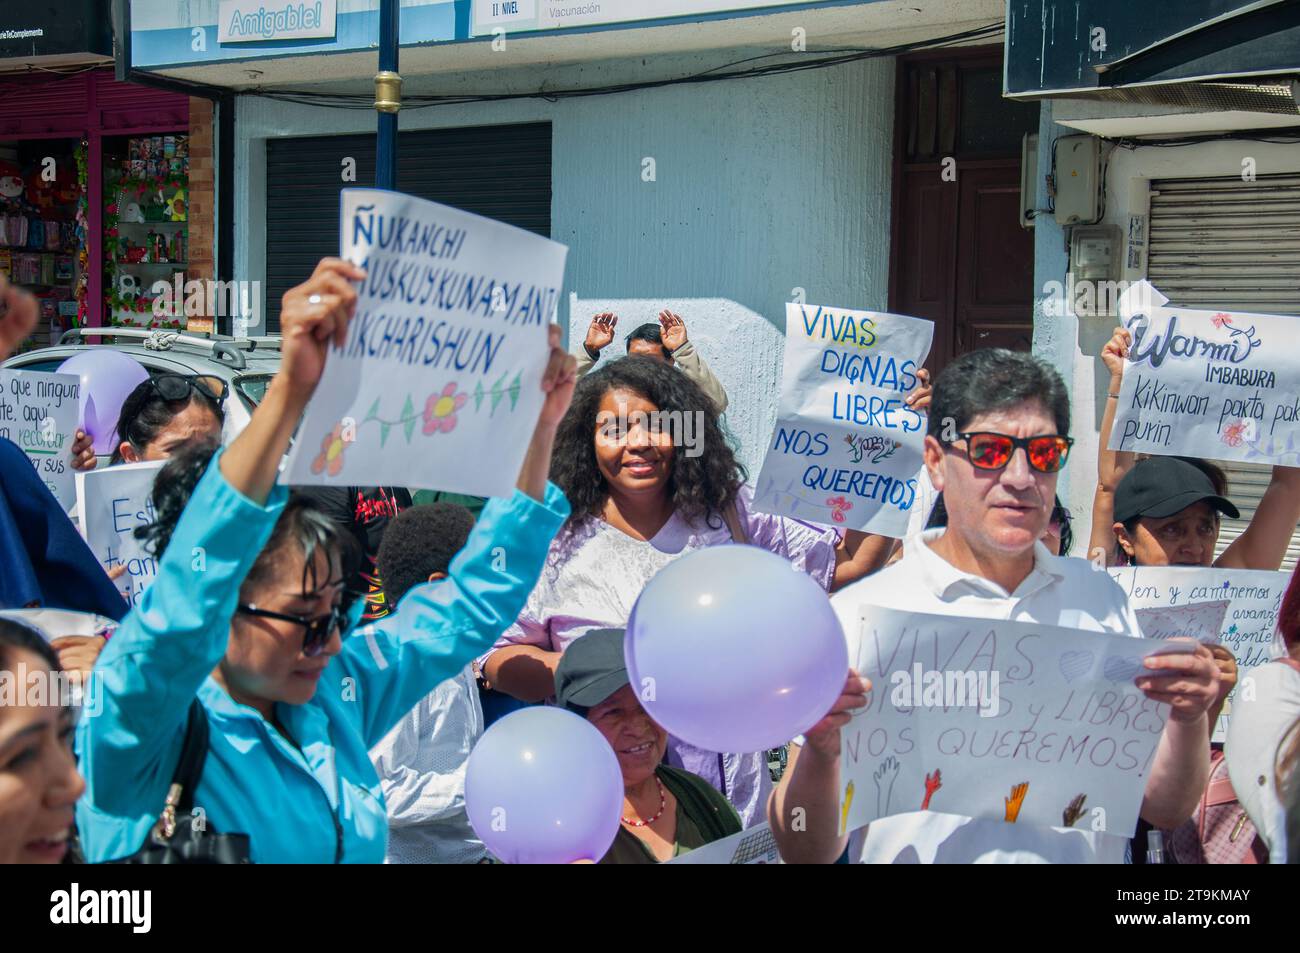 manifestación feminista contra el racismo y el feminicidio en américa latina, hombres y mujeres con pancartas se mantuvieron en alto protestando por la igualdad. Foto de stock